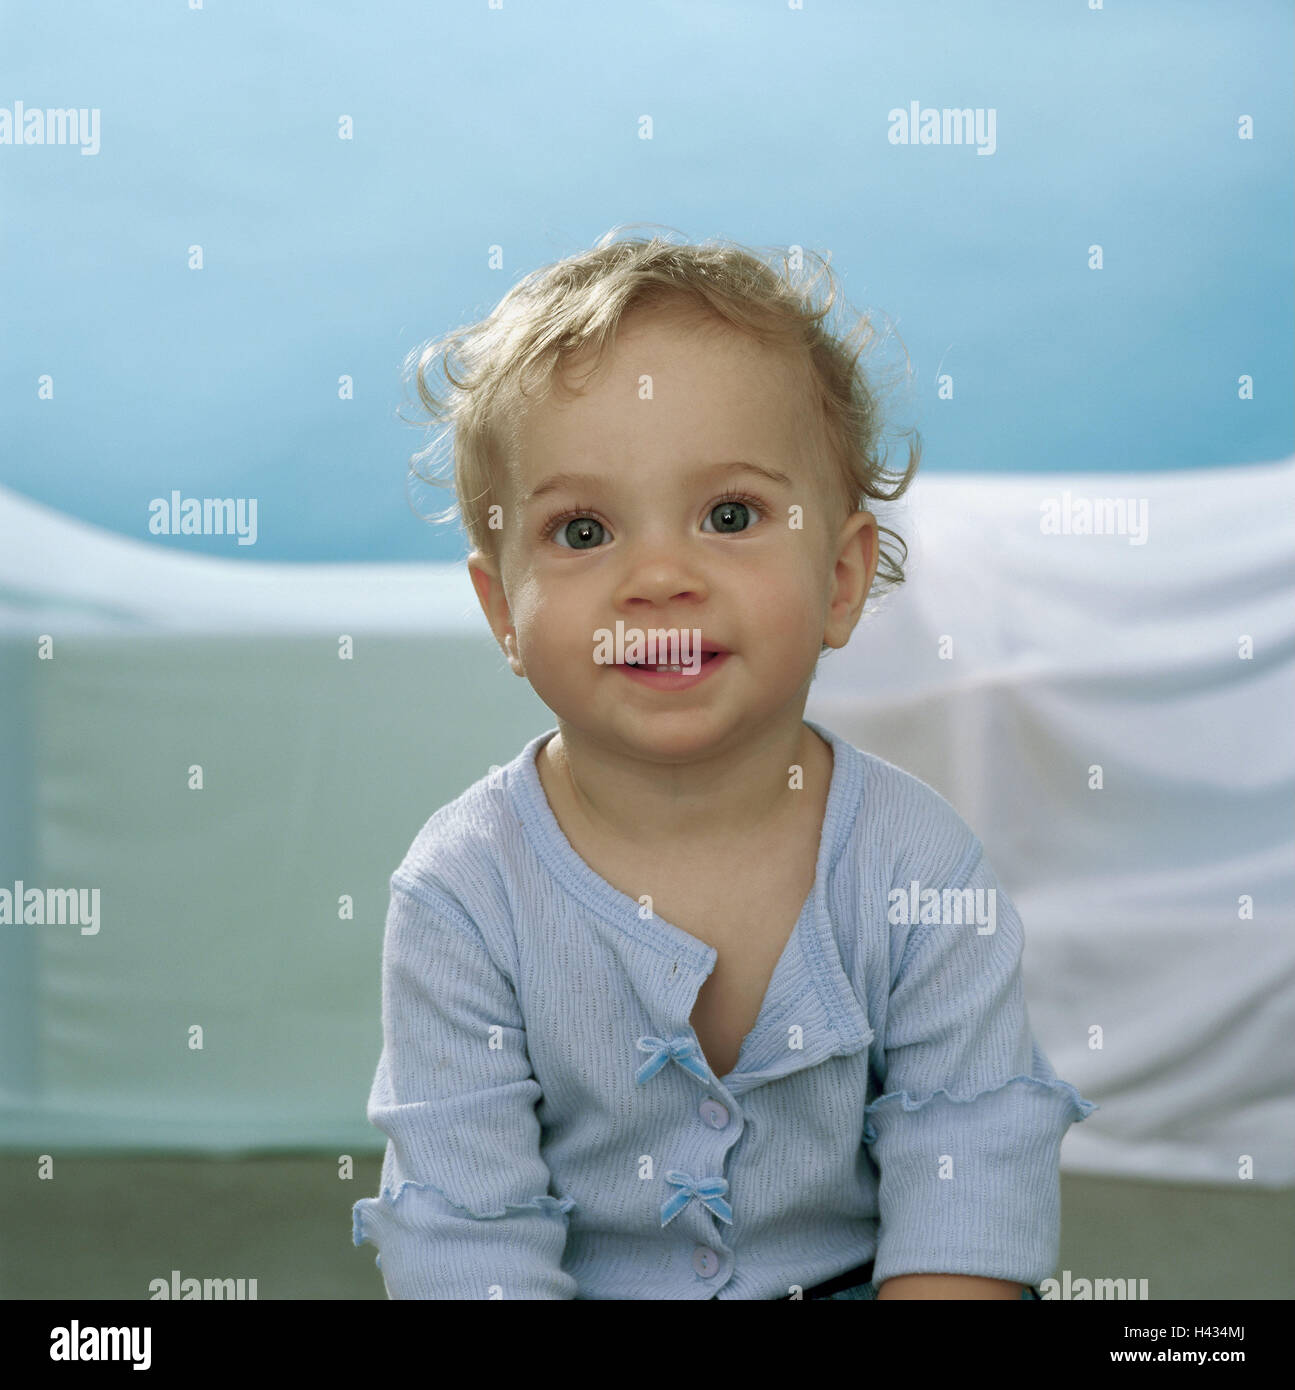 Il Toddler, ragazze, semi-ritratto, ride serie, persone bambino 9 mesi, top luce-blu, sguardo fotocamera, eye-colore blu, latte-denti, edge-denti, infanzia liberamente, naturalezza, cutely pacificamente, interna Foto Stock